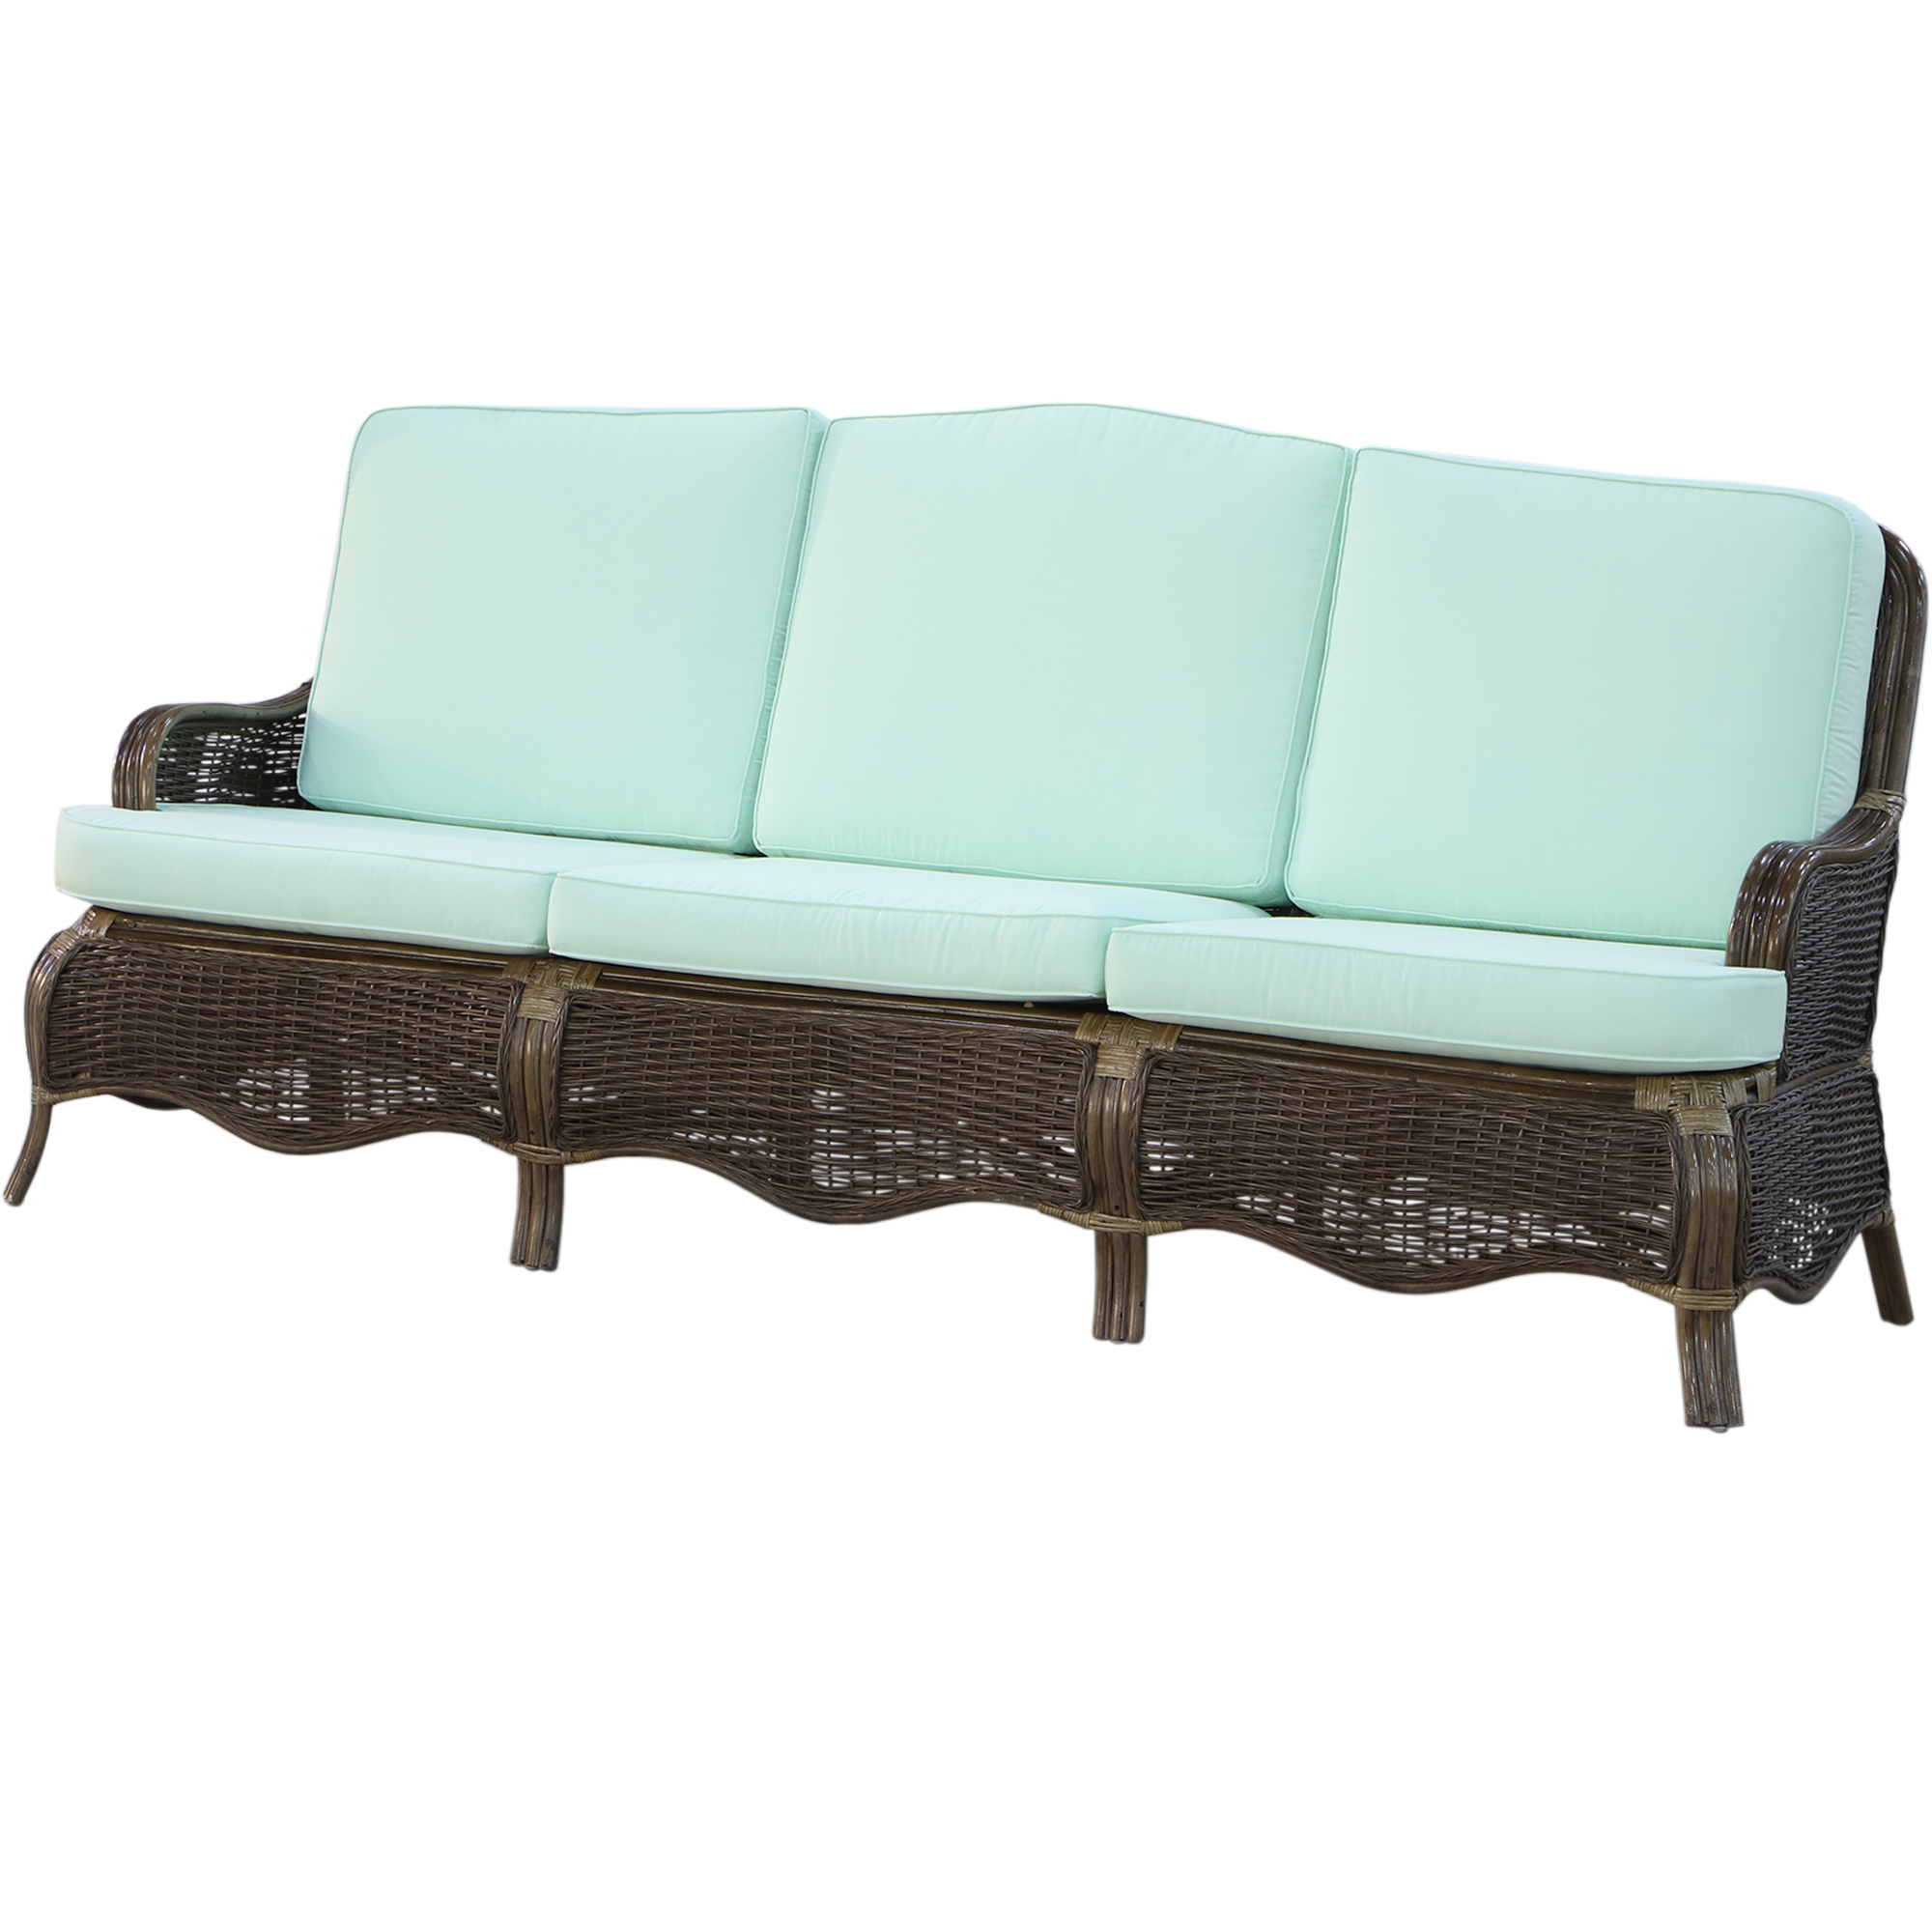 Комплект мебели Rattan grand manchester 5 предметов, цвет коричневый - фото 2